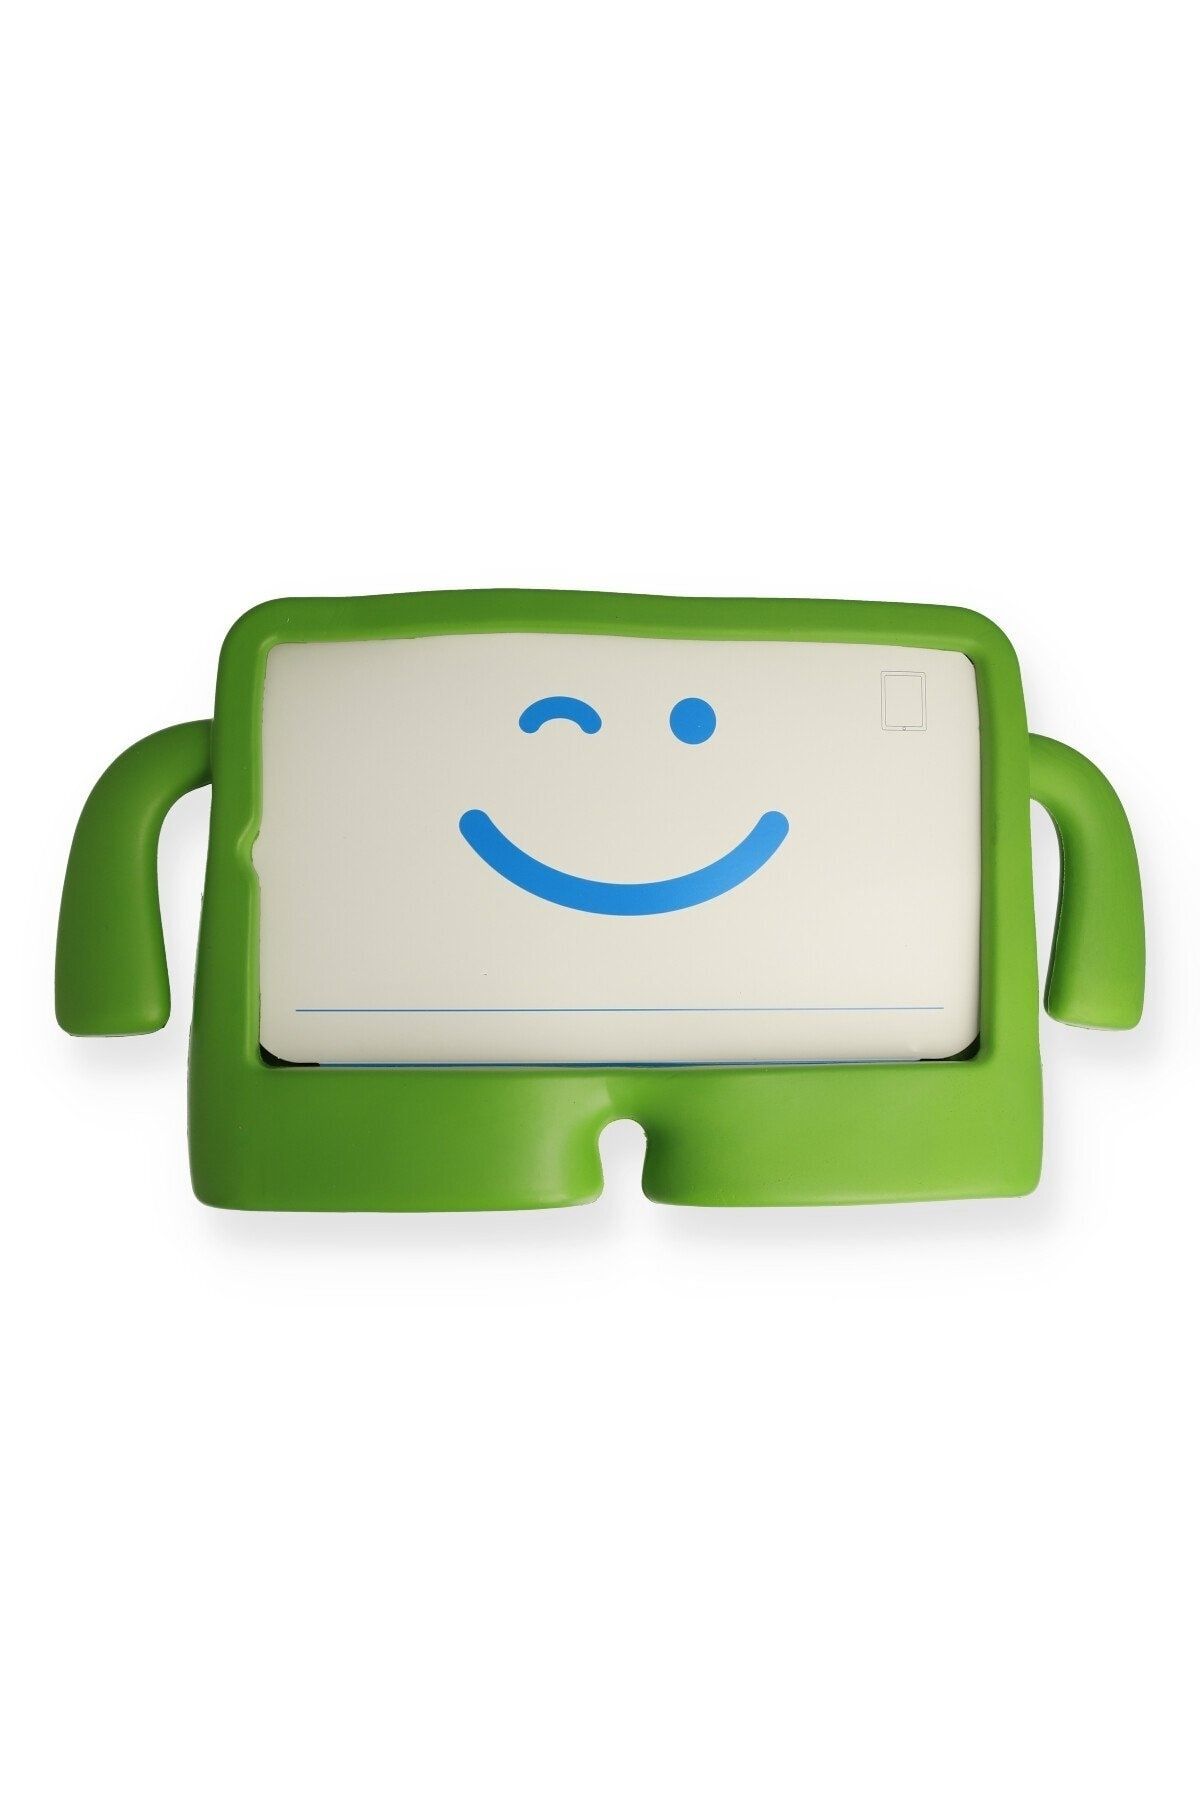 Bilişim Aksesuar Ipad Mini 3 Kılıf Karakter Tablet Silikon - Yeşil